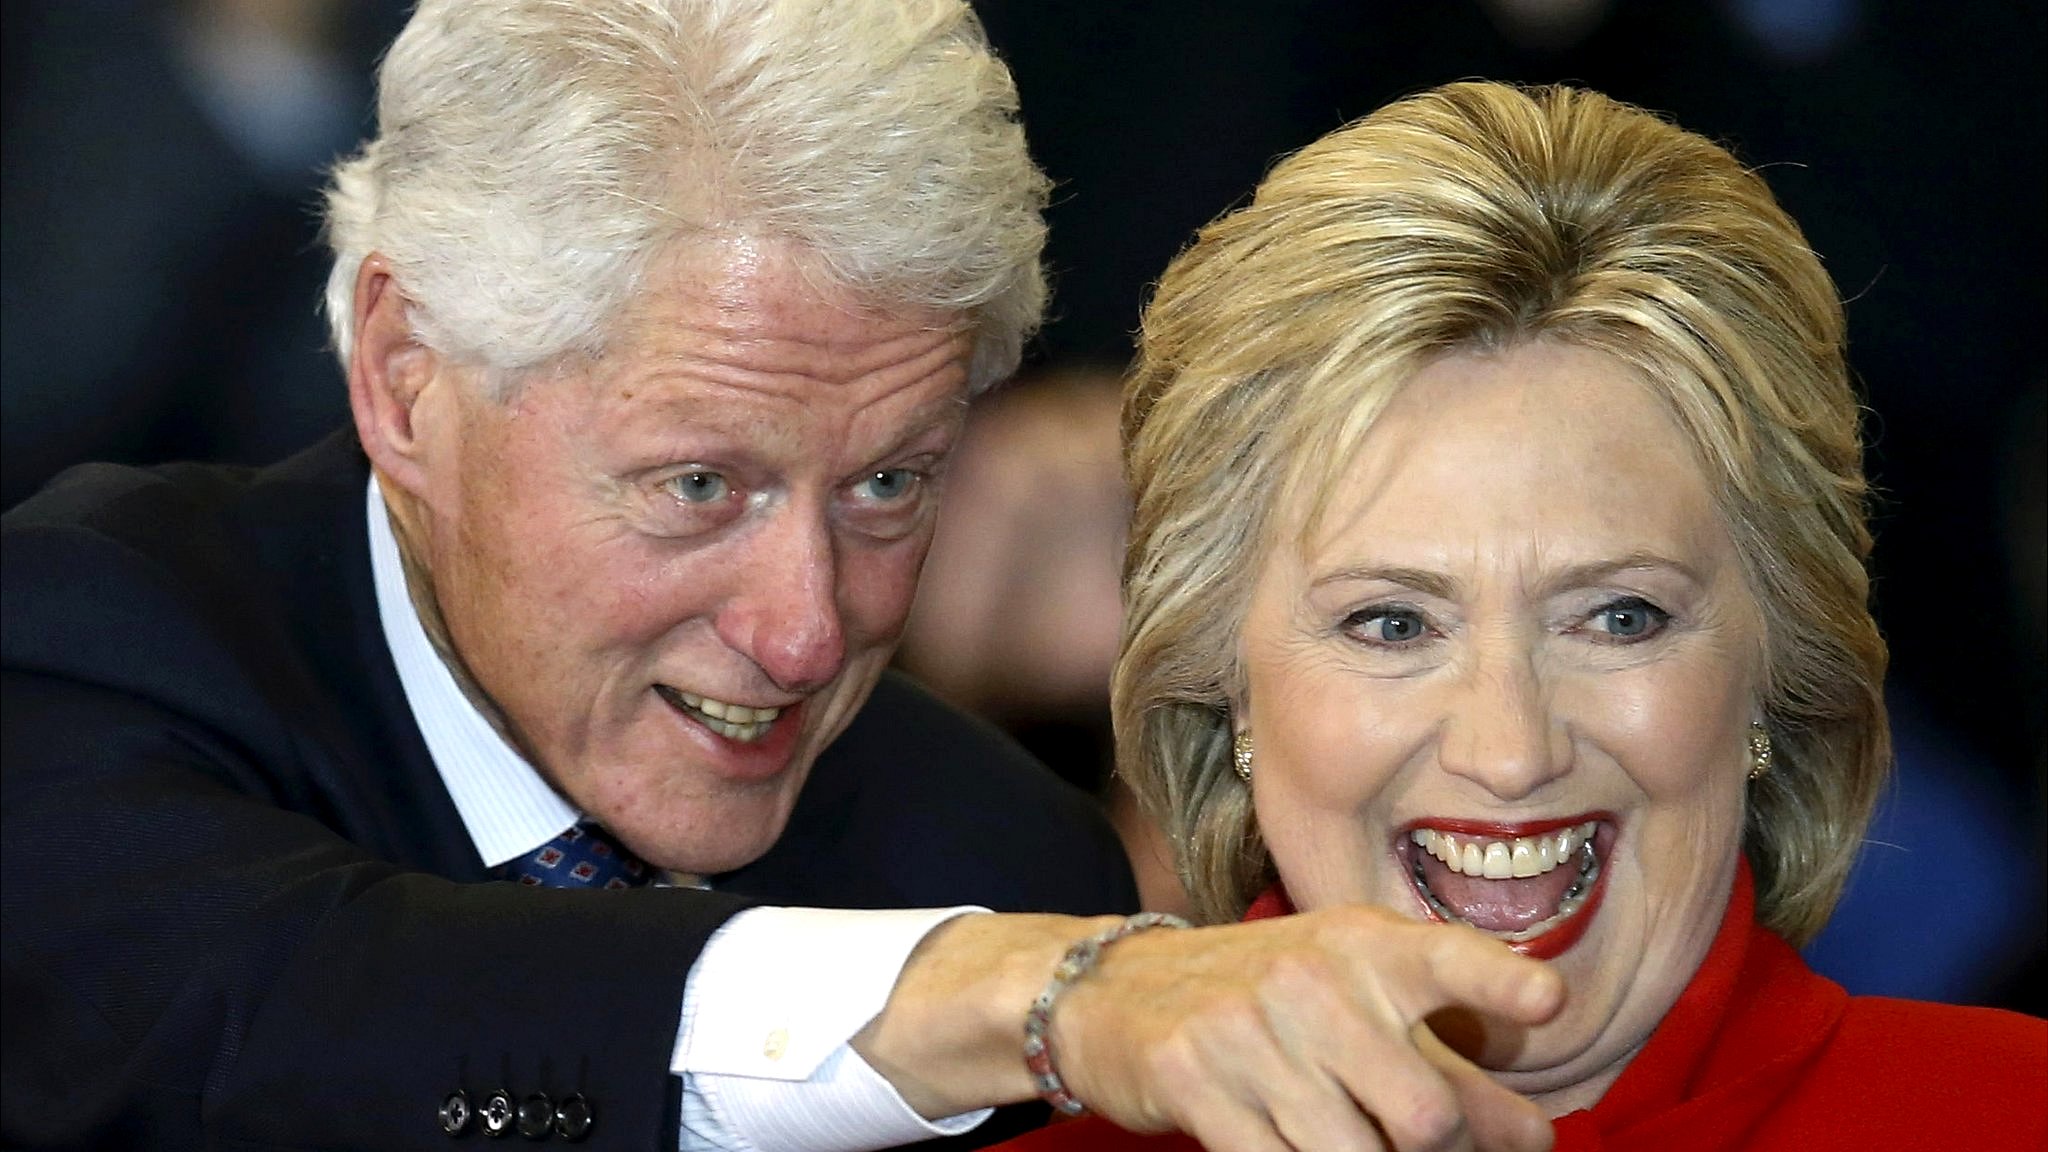 Por qué el escándalo sexual entre Bill Clinton y Monica Lewinsky facilitó  la elección de Donald Trump - BBC News Mundo